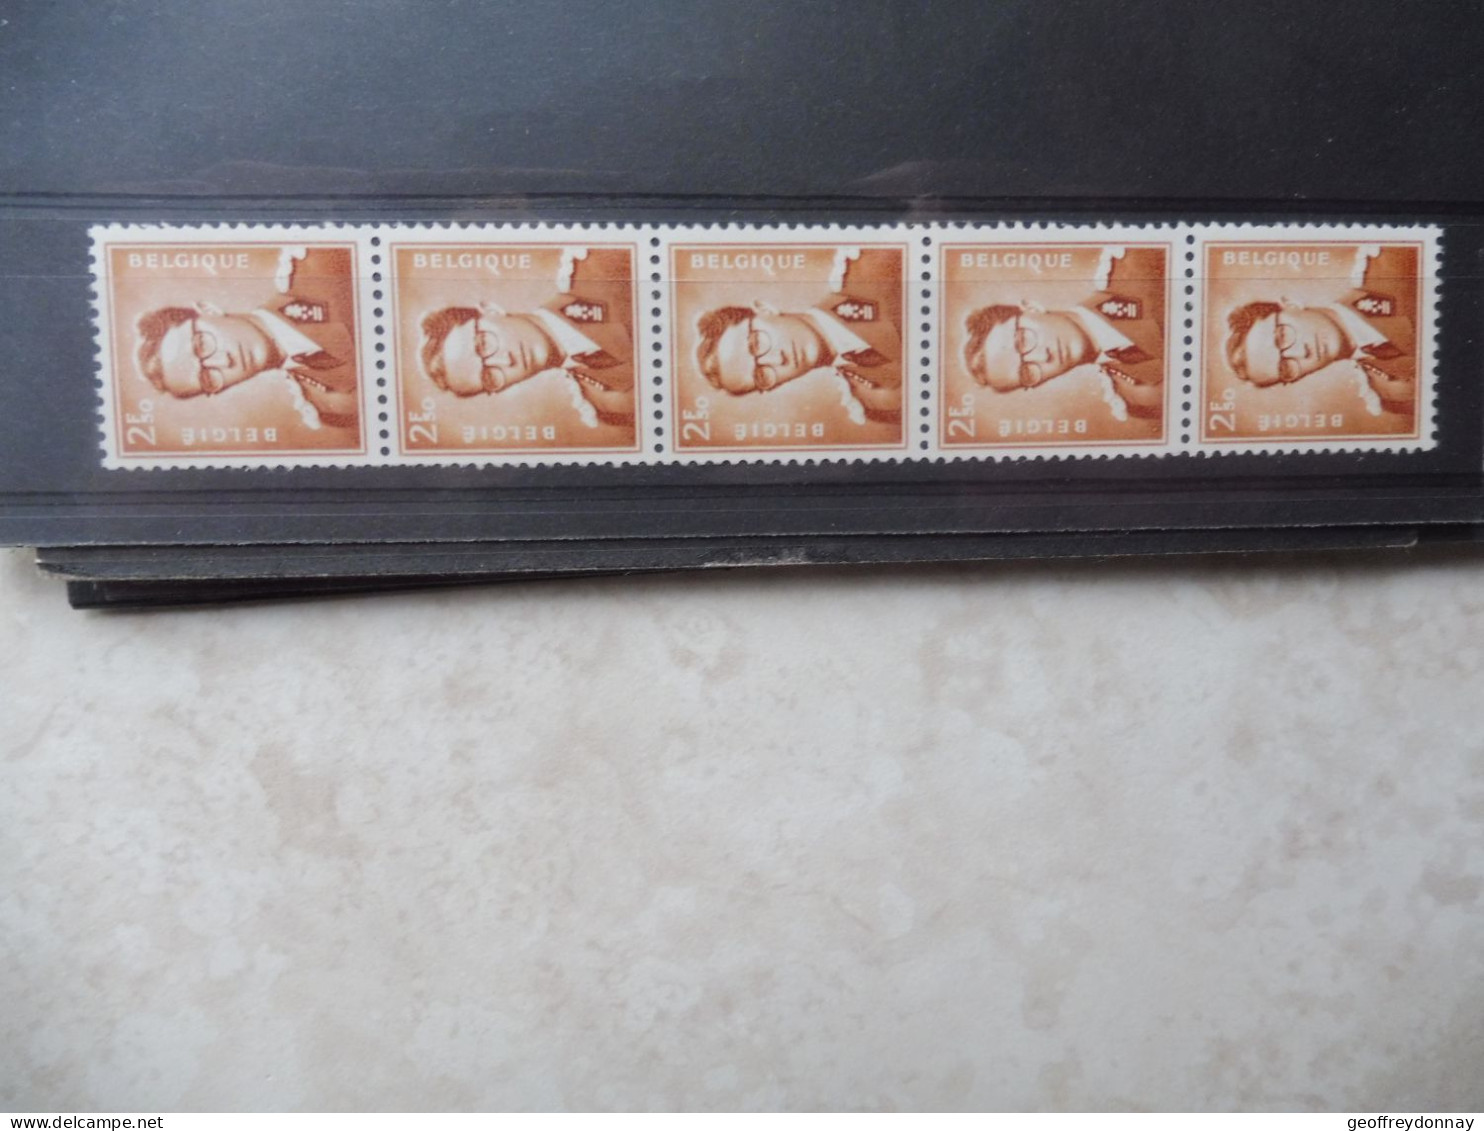 Belgique Belgie Bande Rouleau Rolzegels R 31 Parfait Etat Mnh ** Neuf  Baudouin Boudewijn - Coil Stamps